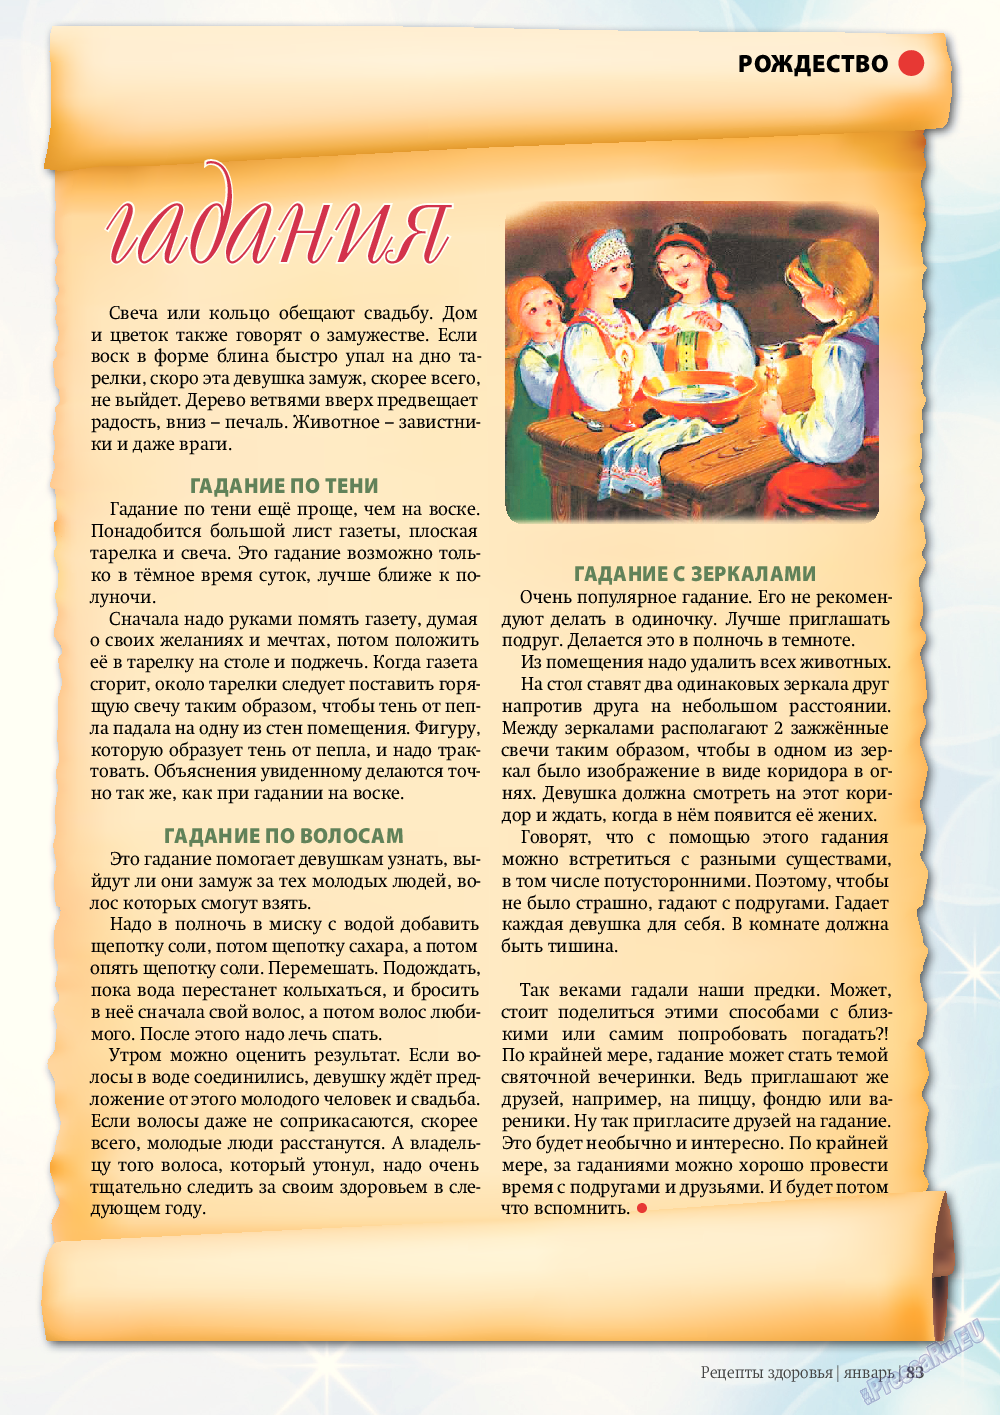 Рецепты здоровья, журнал. 2012 №1 стр.83